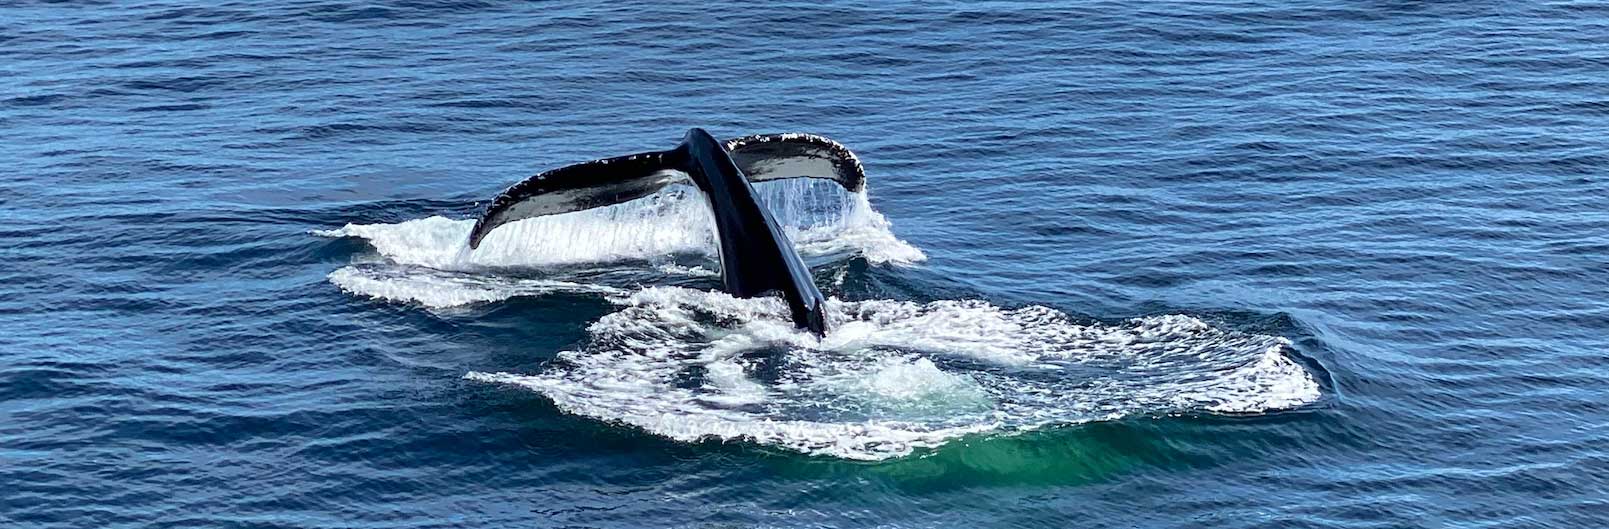 La coda di una balena che scende sott'acqua. 